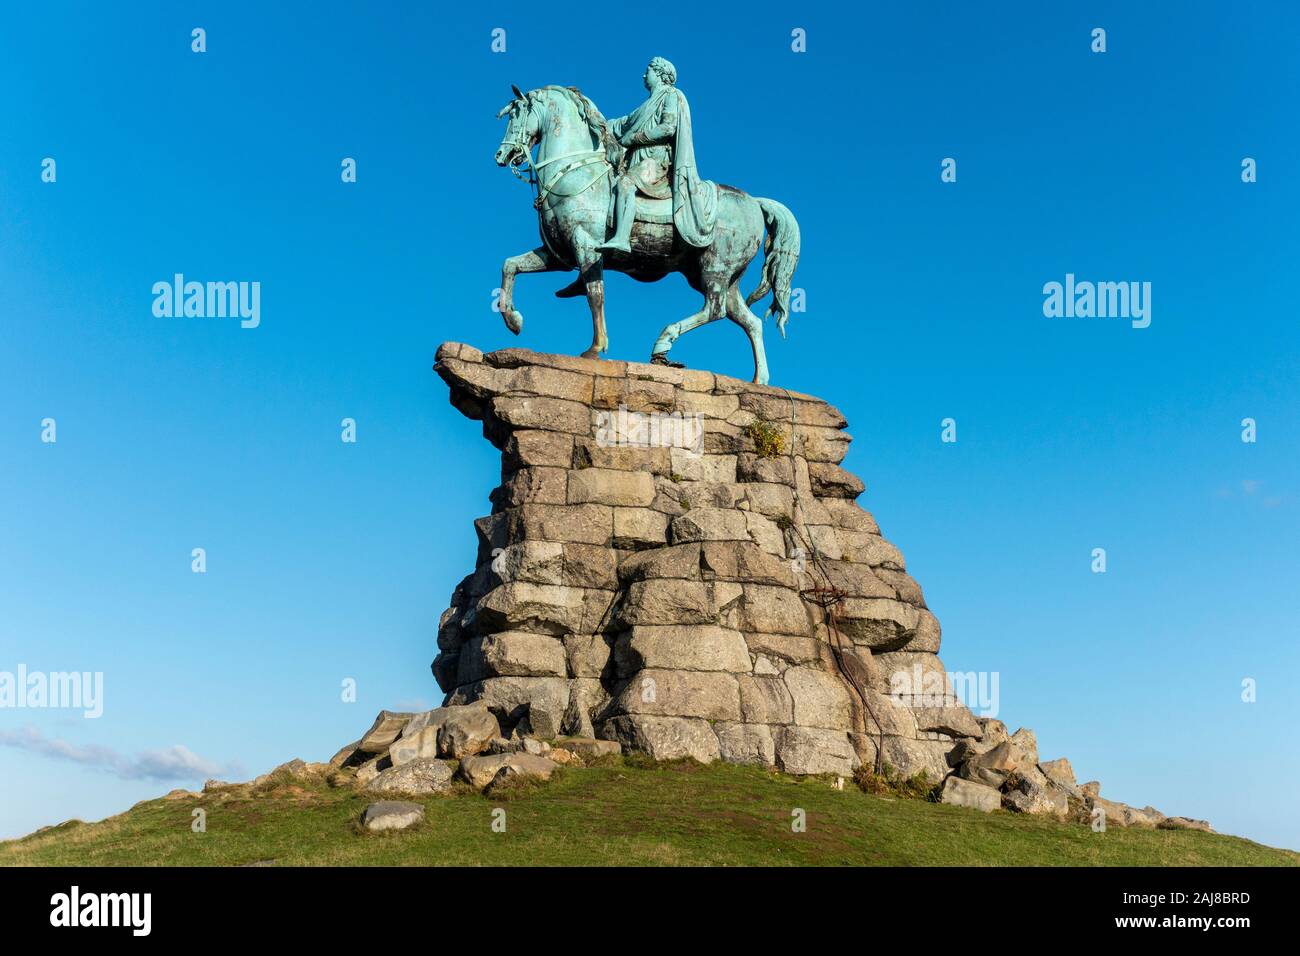 Il rame statua equestre del re George III come un Imperatore Romano sulla collina di neve sulla lunga passeggiata in Windsor Great Park, Windsor, Berkshire, Inghilterra, Regno Unito Foto Stock